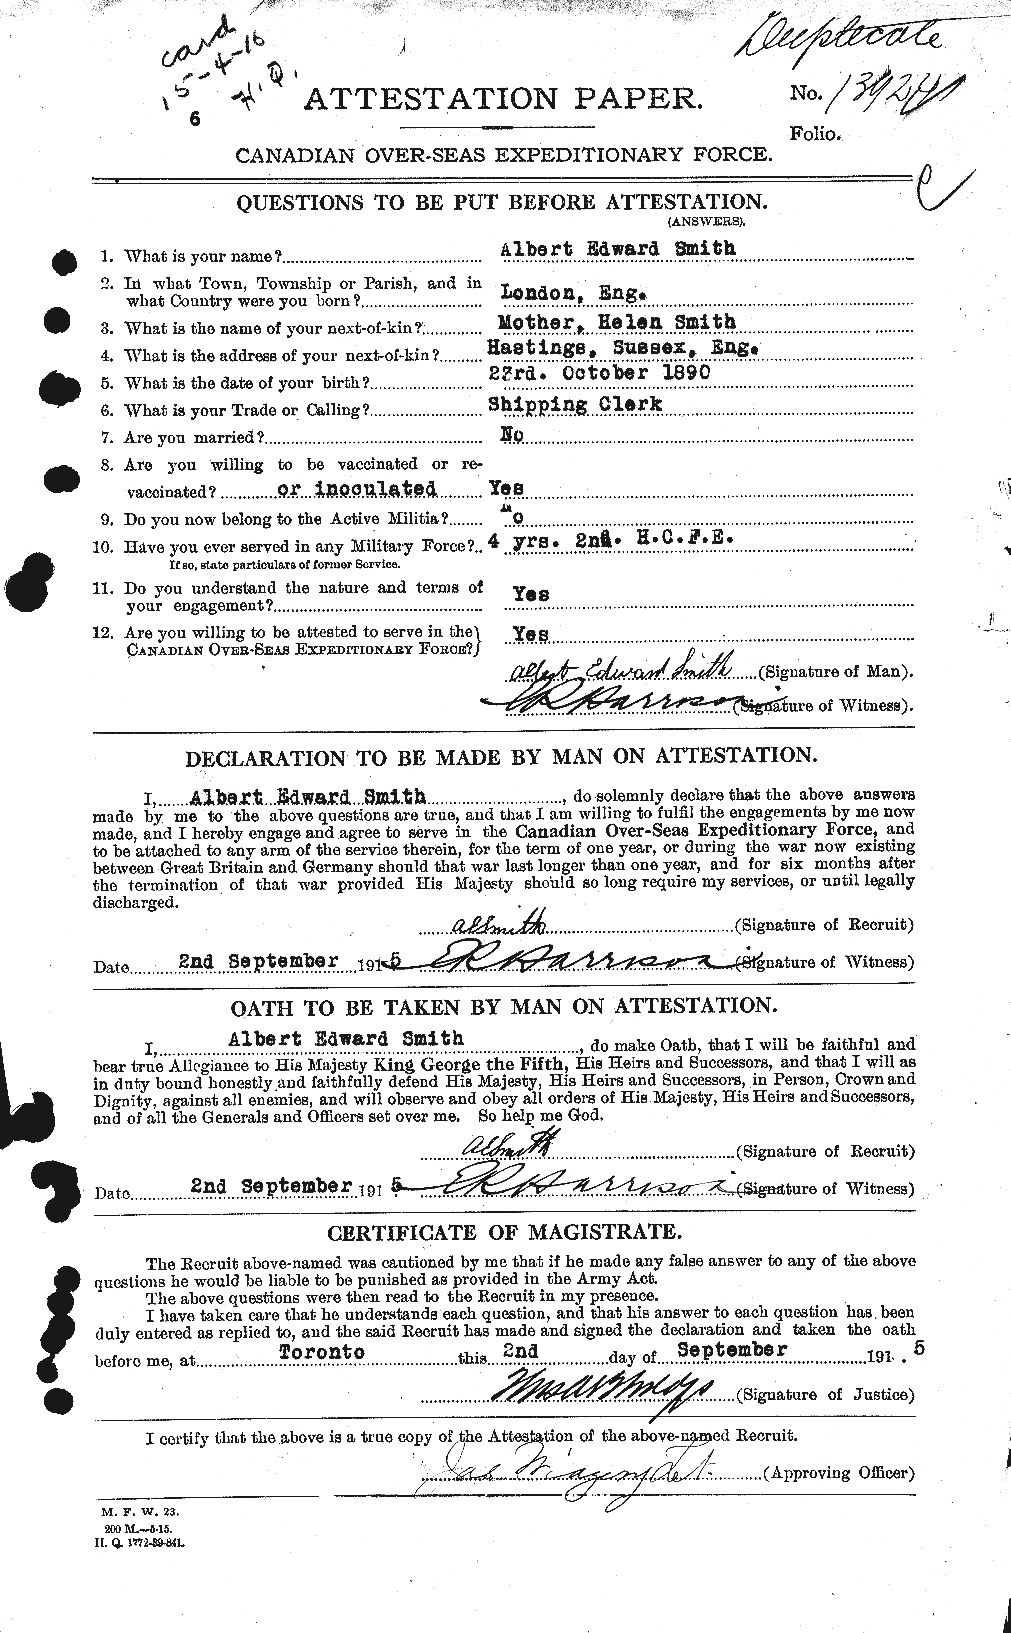 Dossiers du Personnel de la Première Guerre mondiale - CEC 098949a